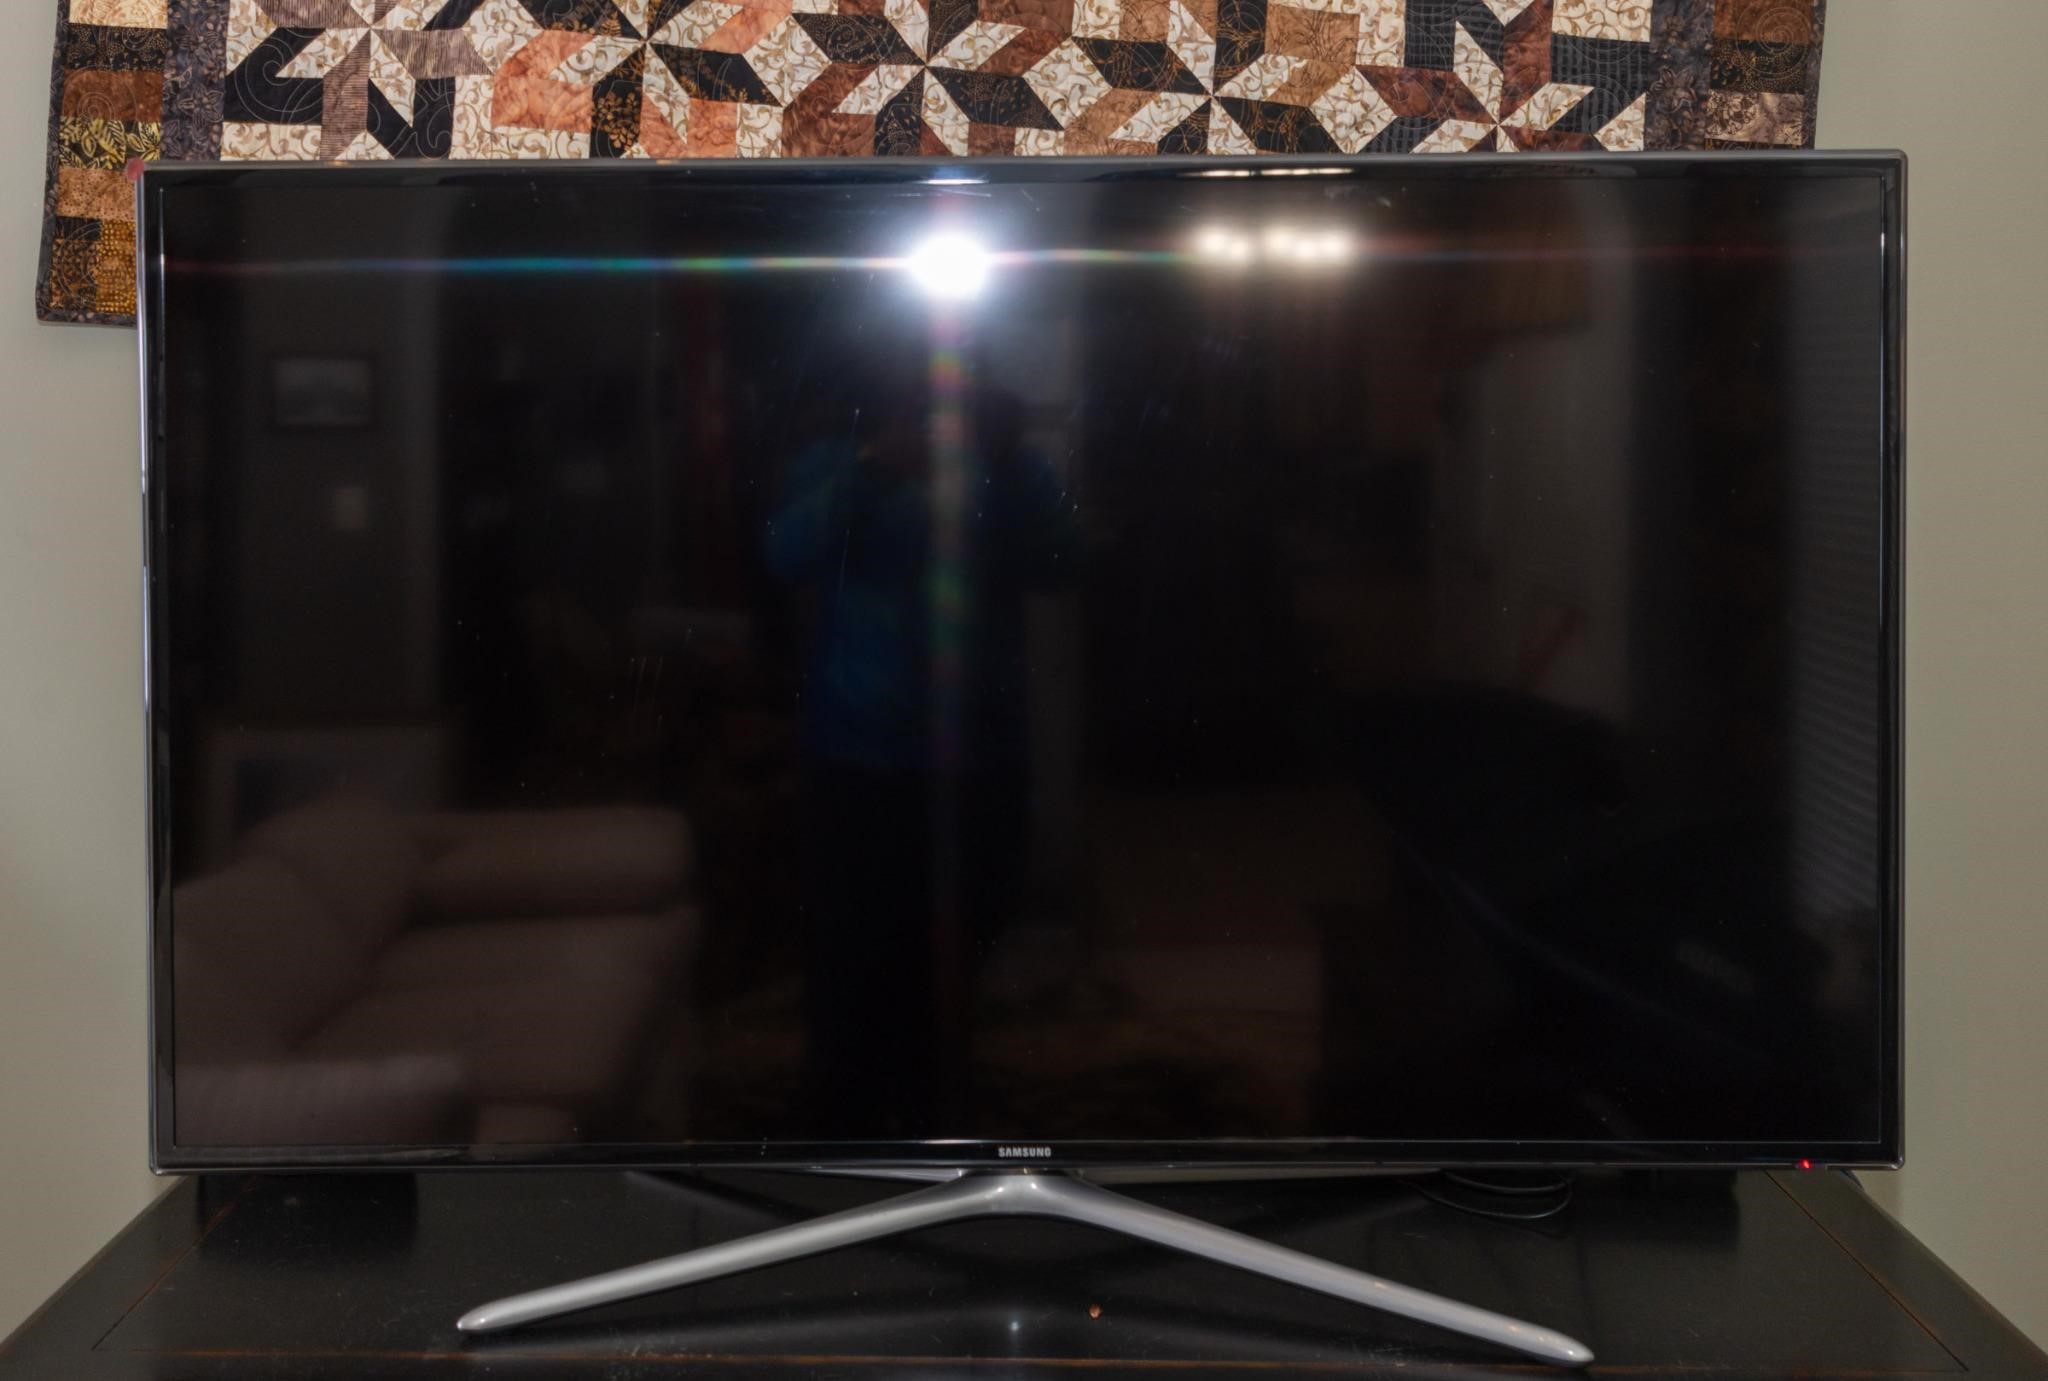 Samsung flatscreen television, model UN60F63000AF